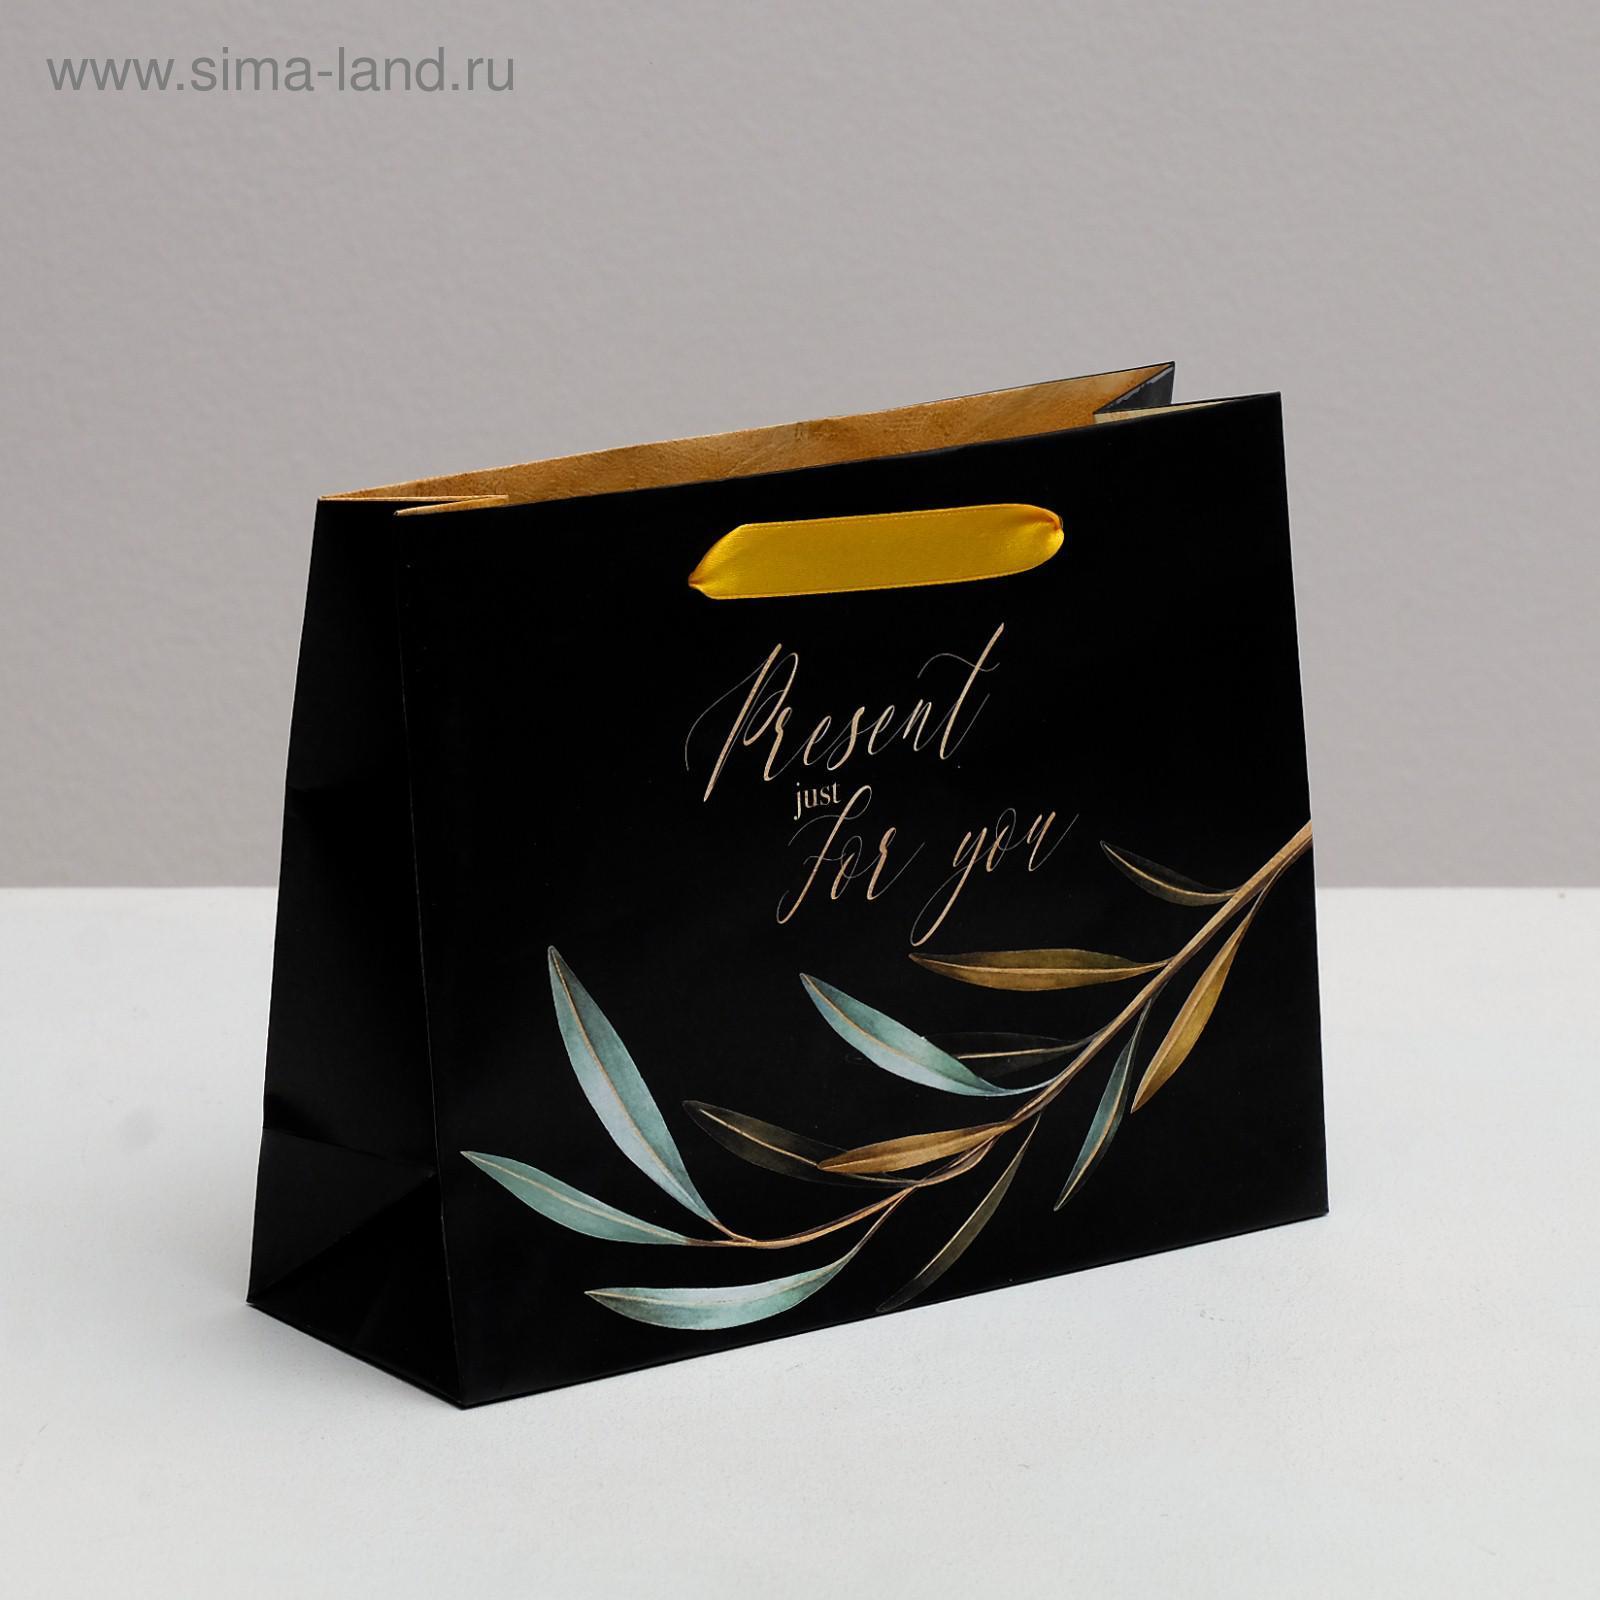 Пакет ламинированный горизонтальный Present just for you, 22 × 17.5 × 8 см